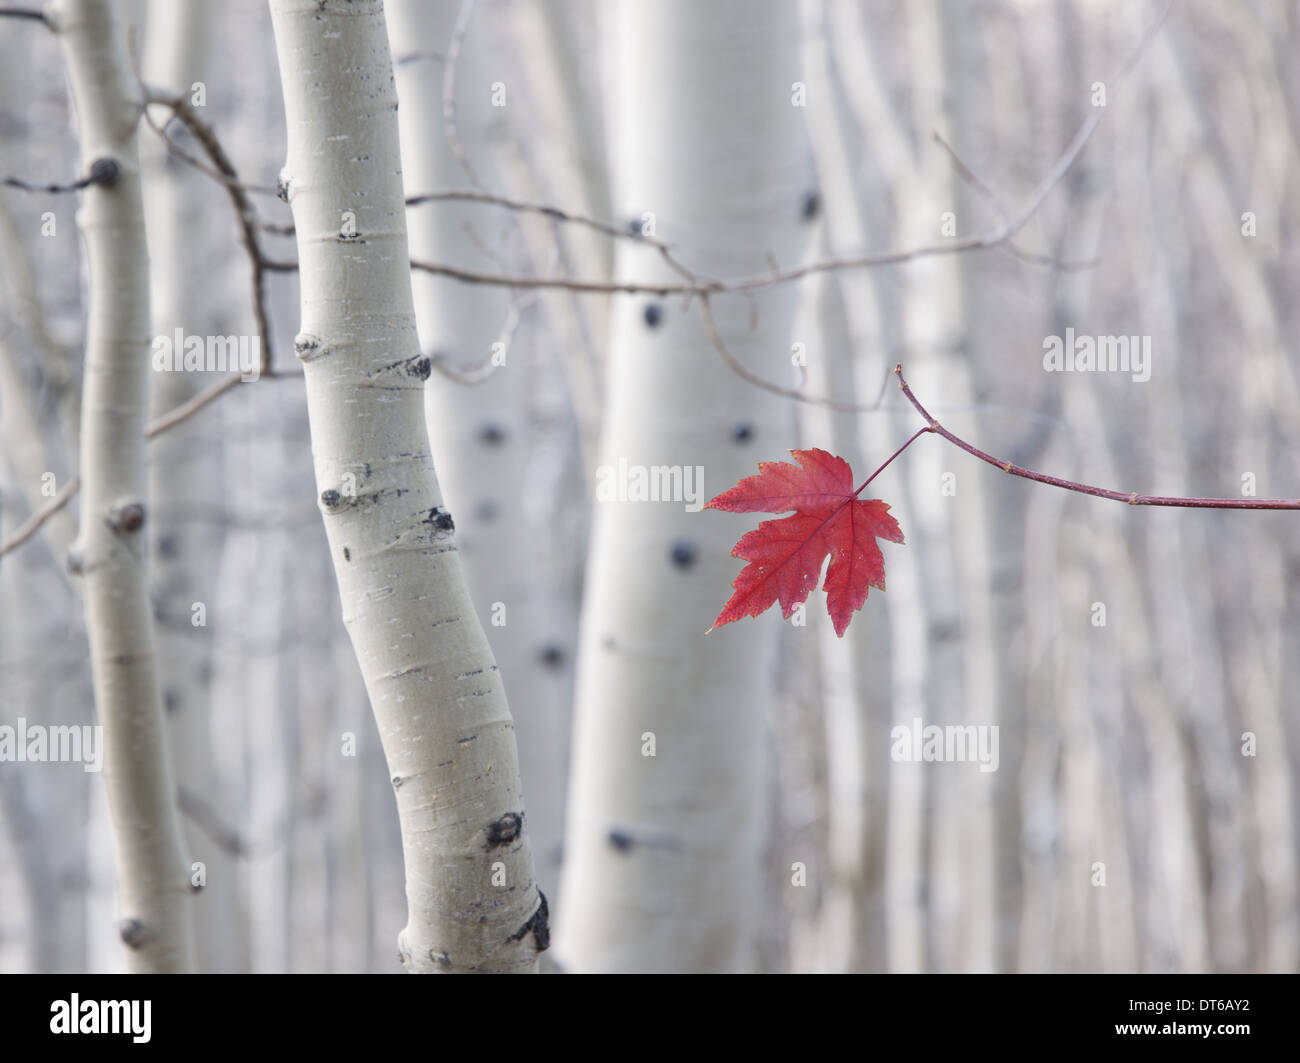 Una sola hoja de arce rojo en otoño, con un trasfondo de Aspen los troncos con corteza de color crema y blanco. Bosque Nacional Wasatch. Foto de stock